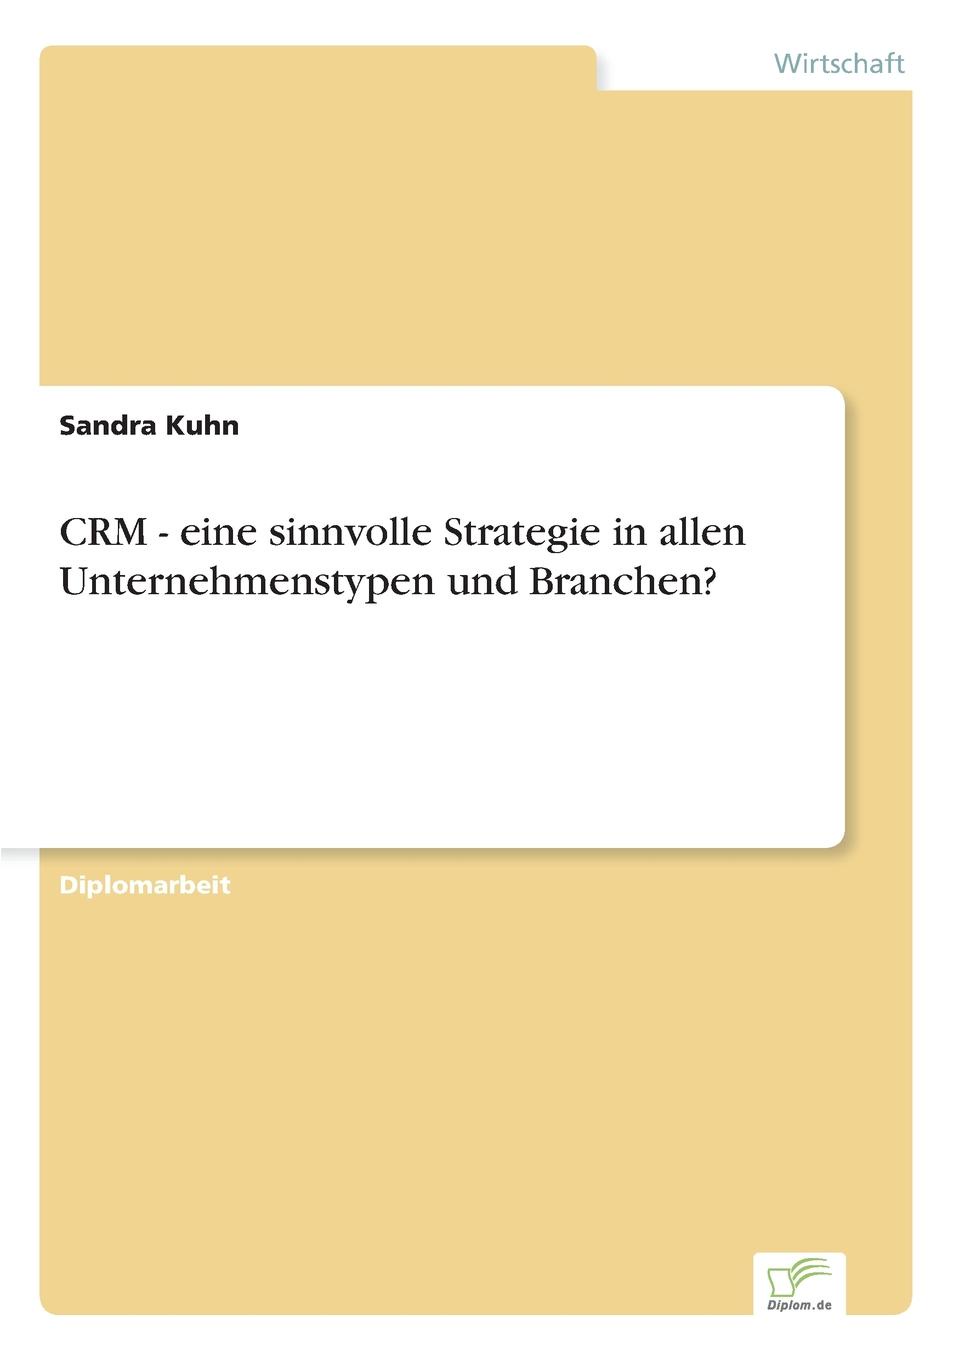 CRM - eine sinnvolle Strategie in allen Unternehmenstypen und Branchen.